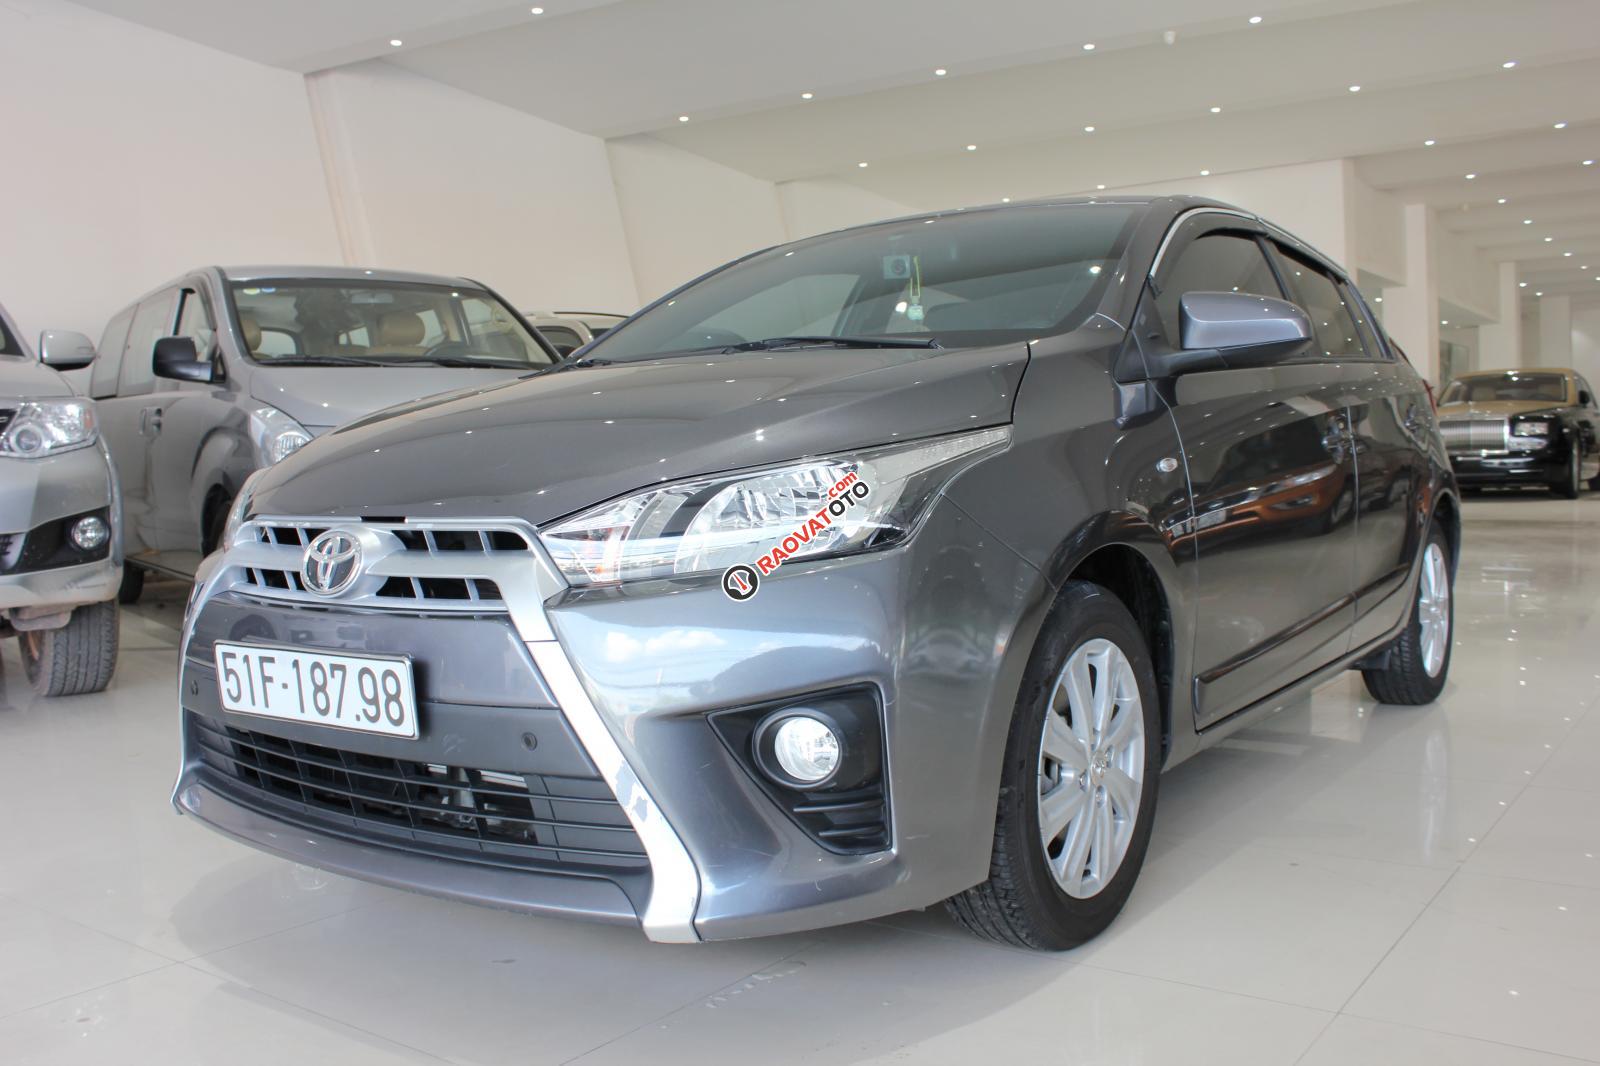 Cần bán Toyota Yaris E số tự động, bảo hành 6 tháng máy hộp số-16